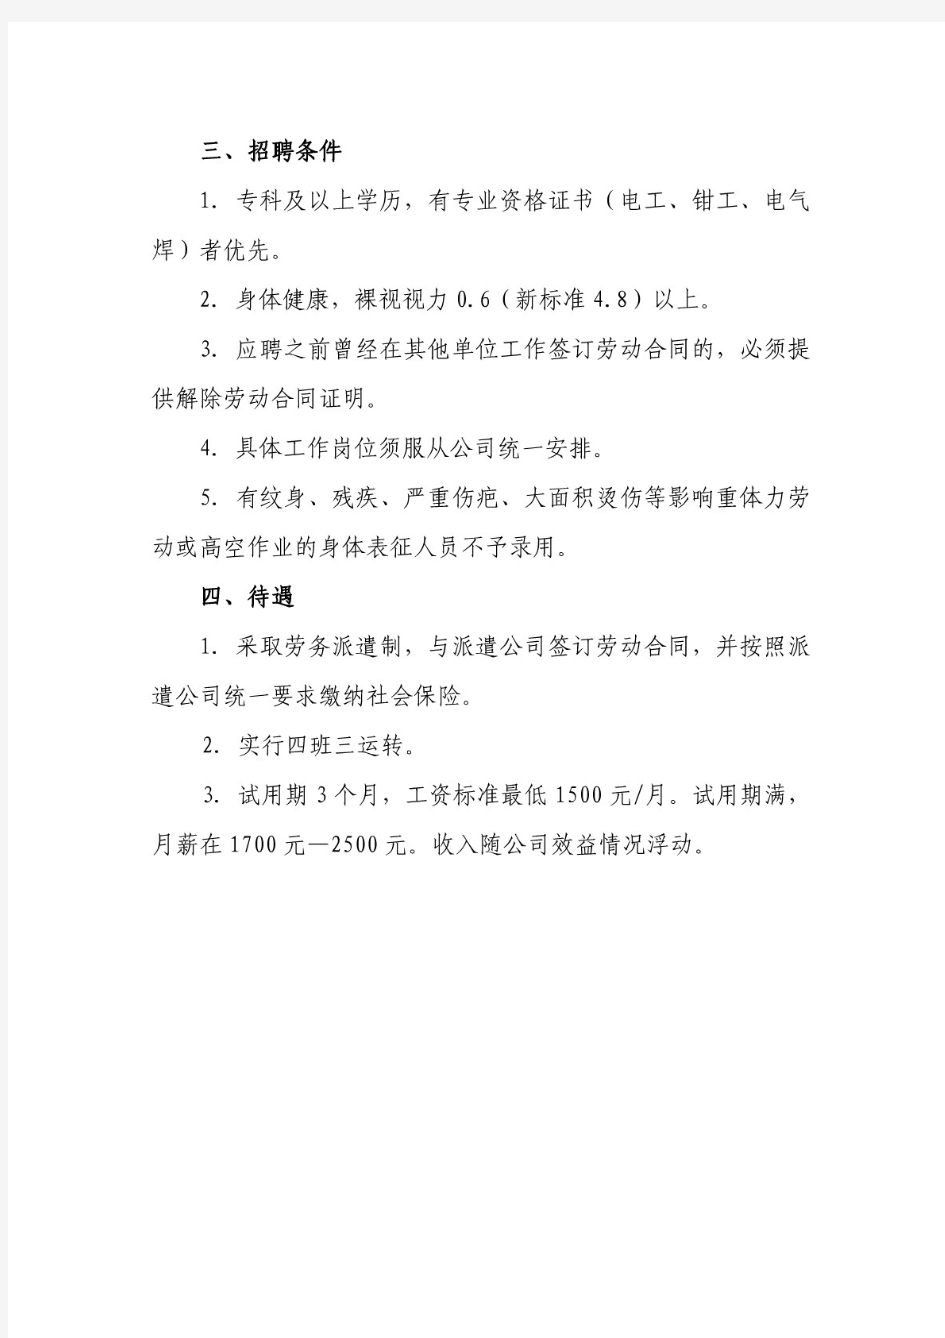 莱钢集团泰东实业有限公司招聘简章